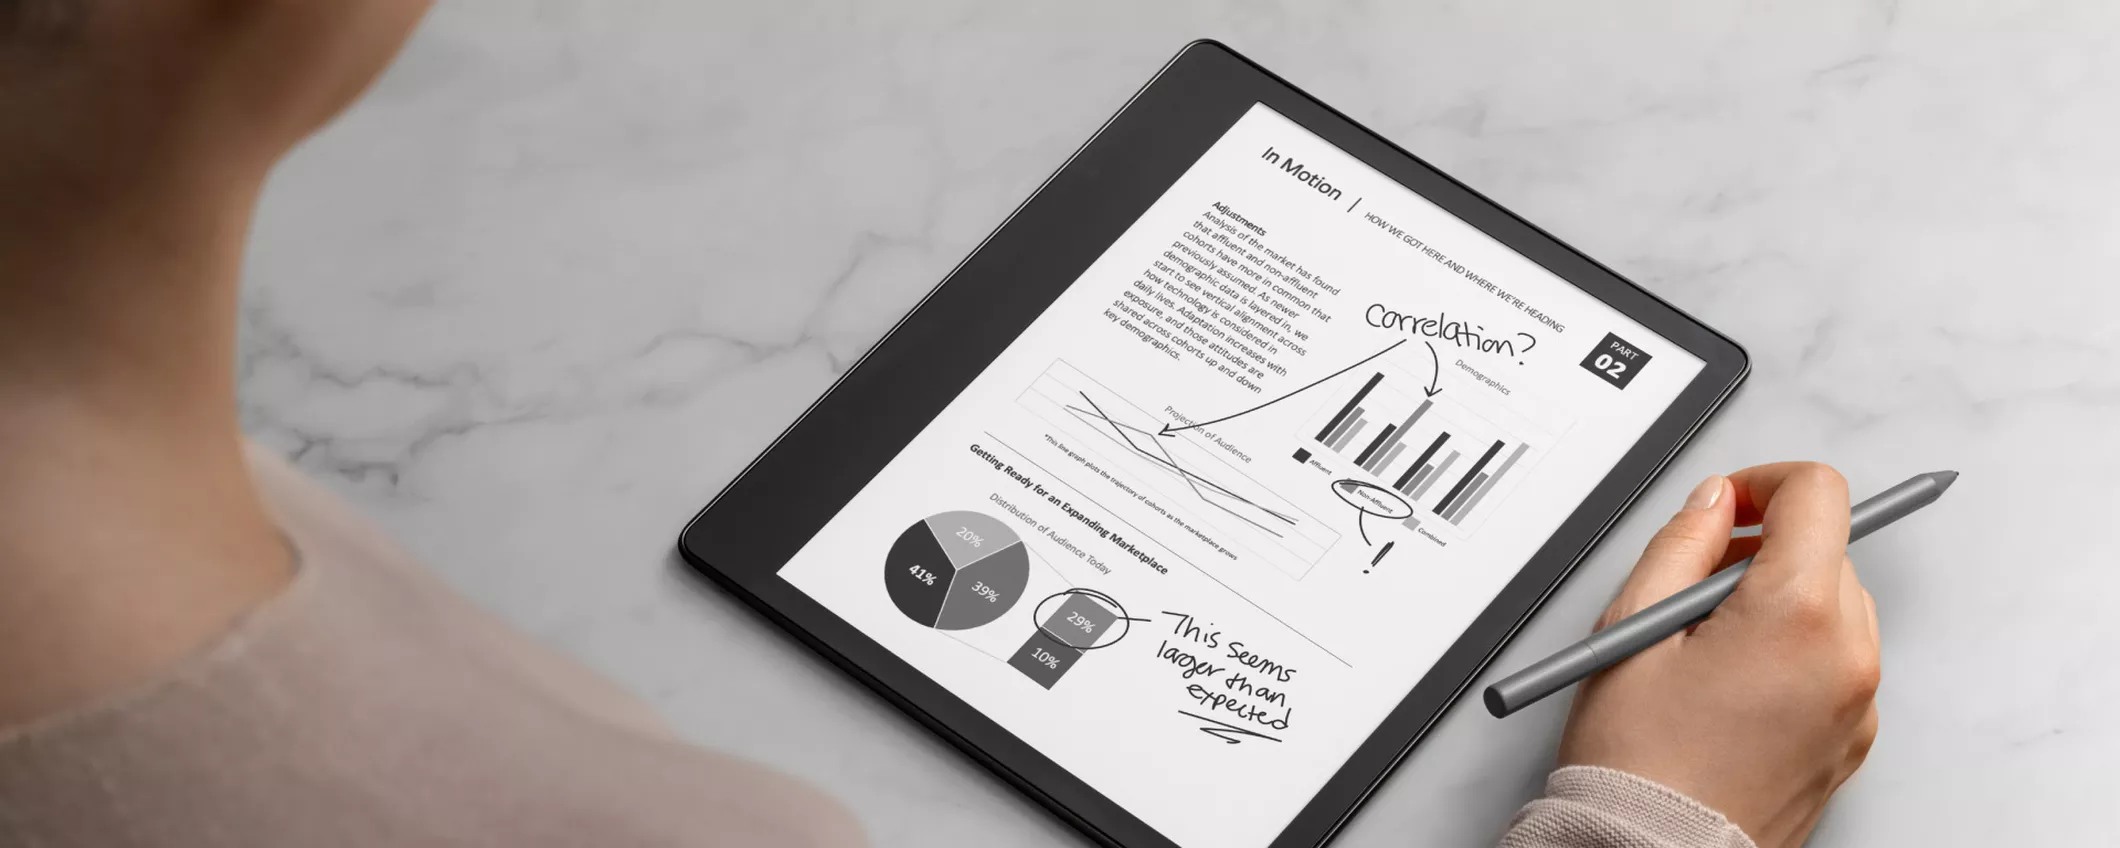 Amazon annuncia Kindle Scribe, il primo e-reader della serie che ti fa scrivere sullo schermo